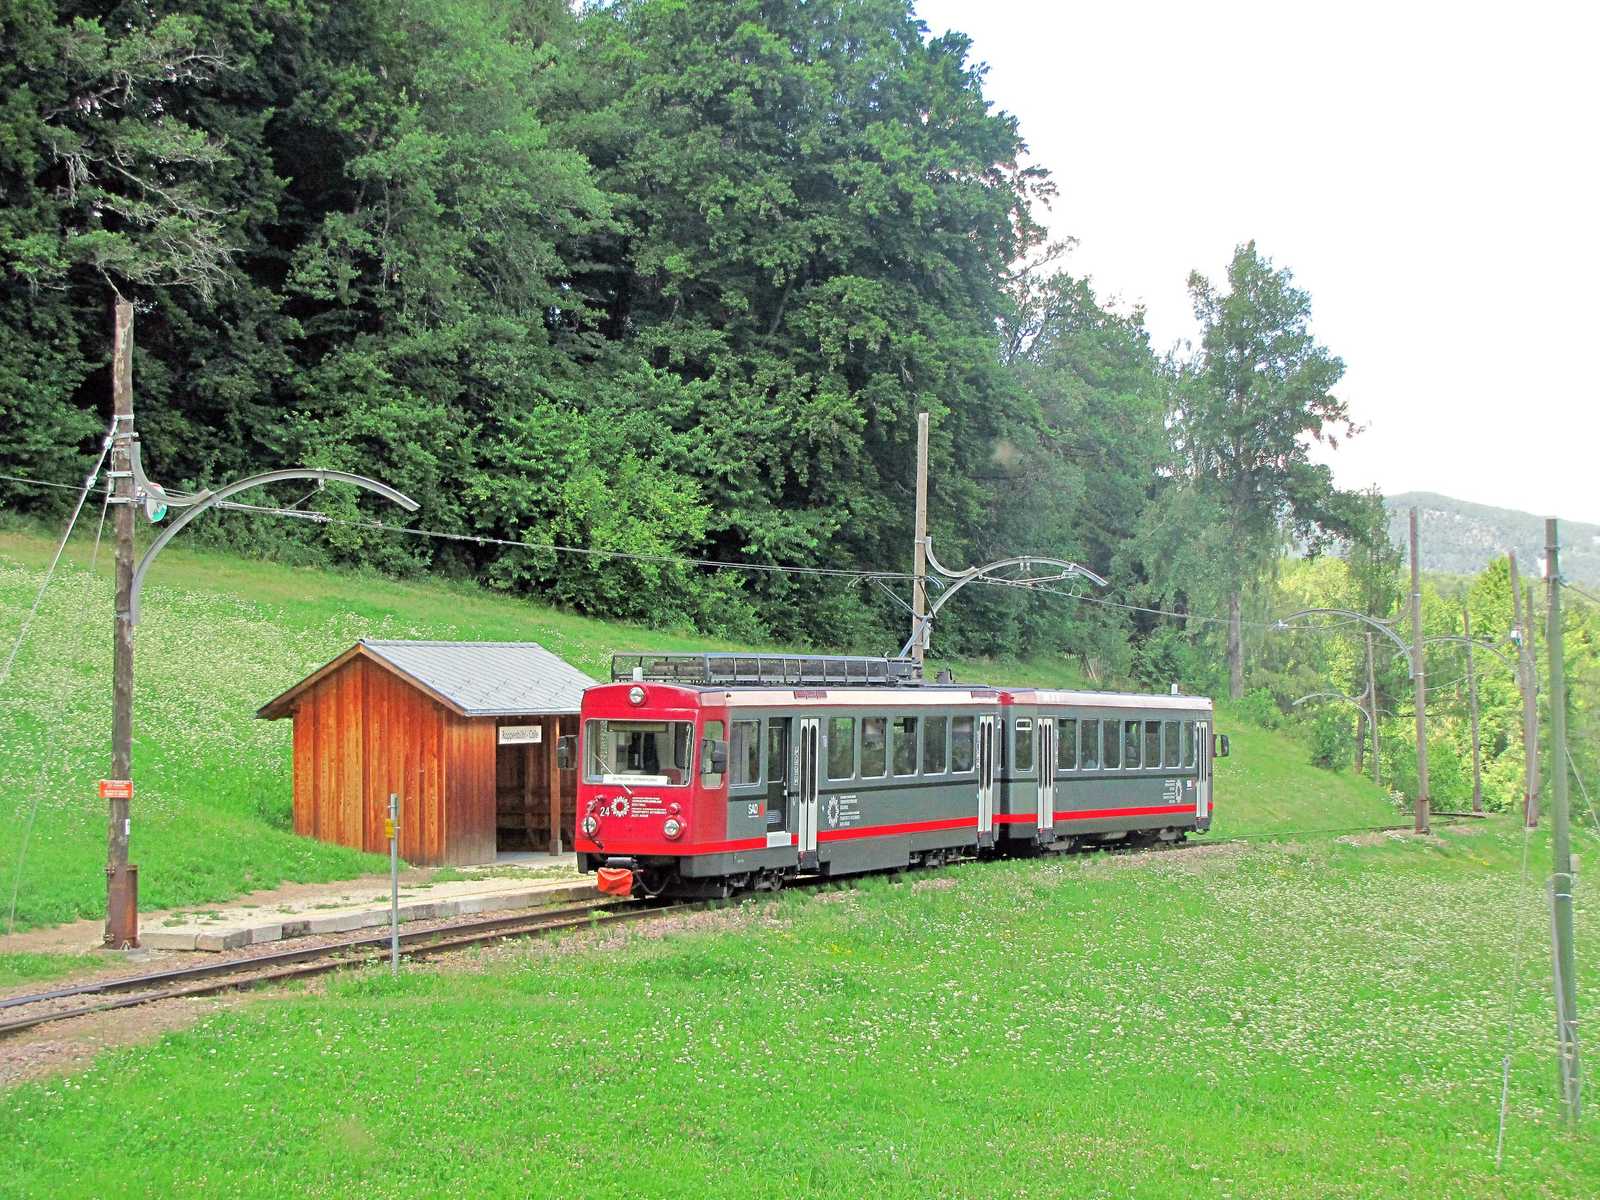 Die Haltestelle Rappersbühl liegt idyllisch zwischen Wäldern und Wiesen. Der Zug unterbricht seine Fahrt nur kurz, um einige Wanderer aussteigen zu lassen.